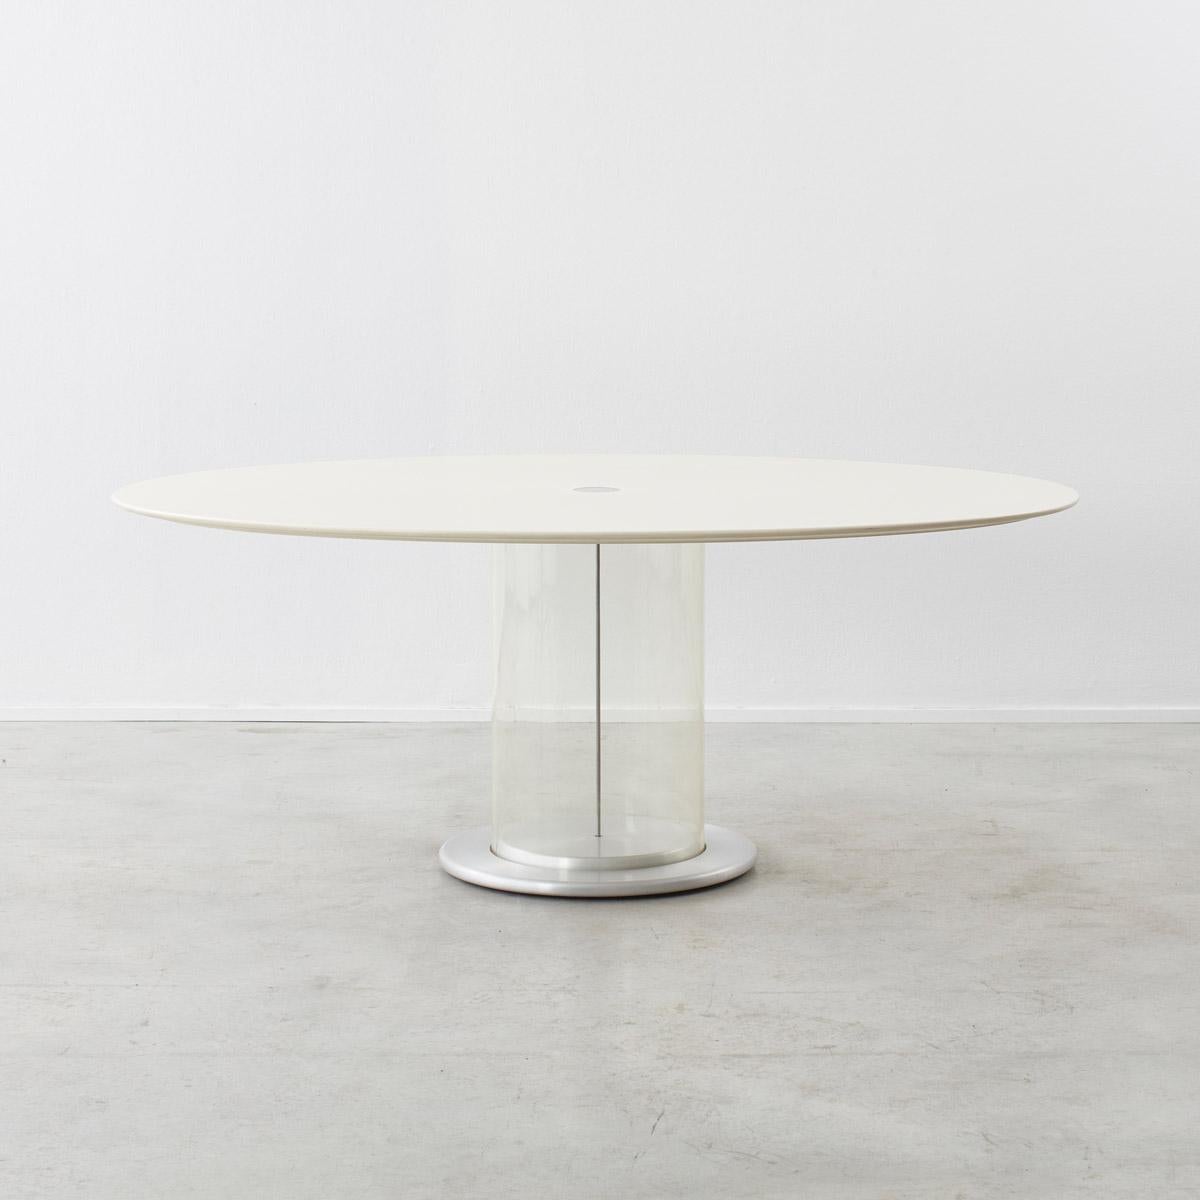 Italian Claudio Salocchi oval table Sormani, Italy 1960s. For Sale